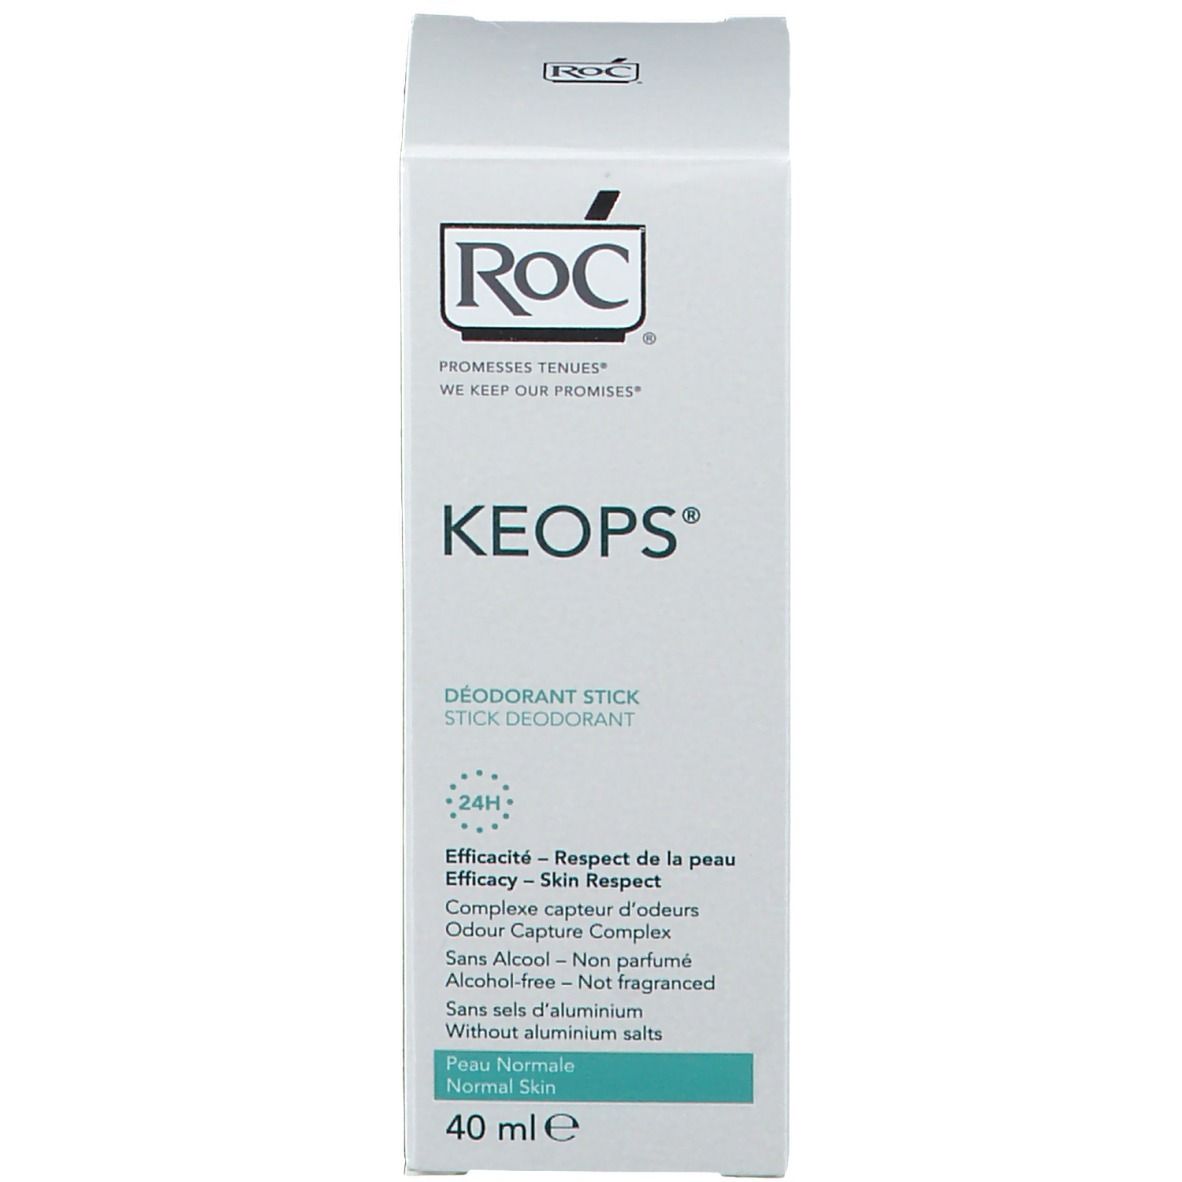 RoC® KEPOS® Deodorante Stick